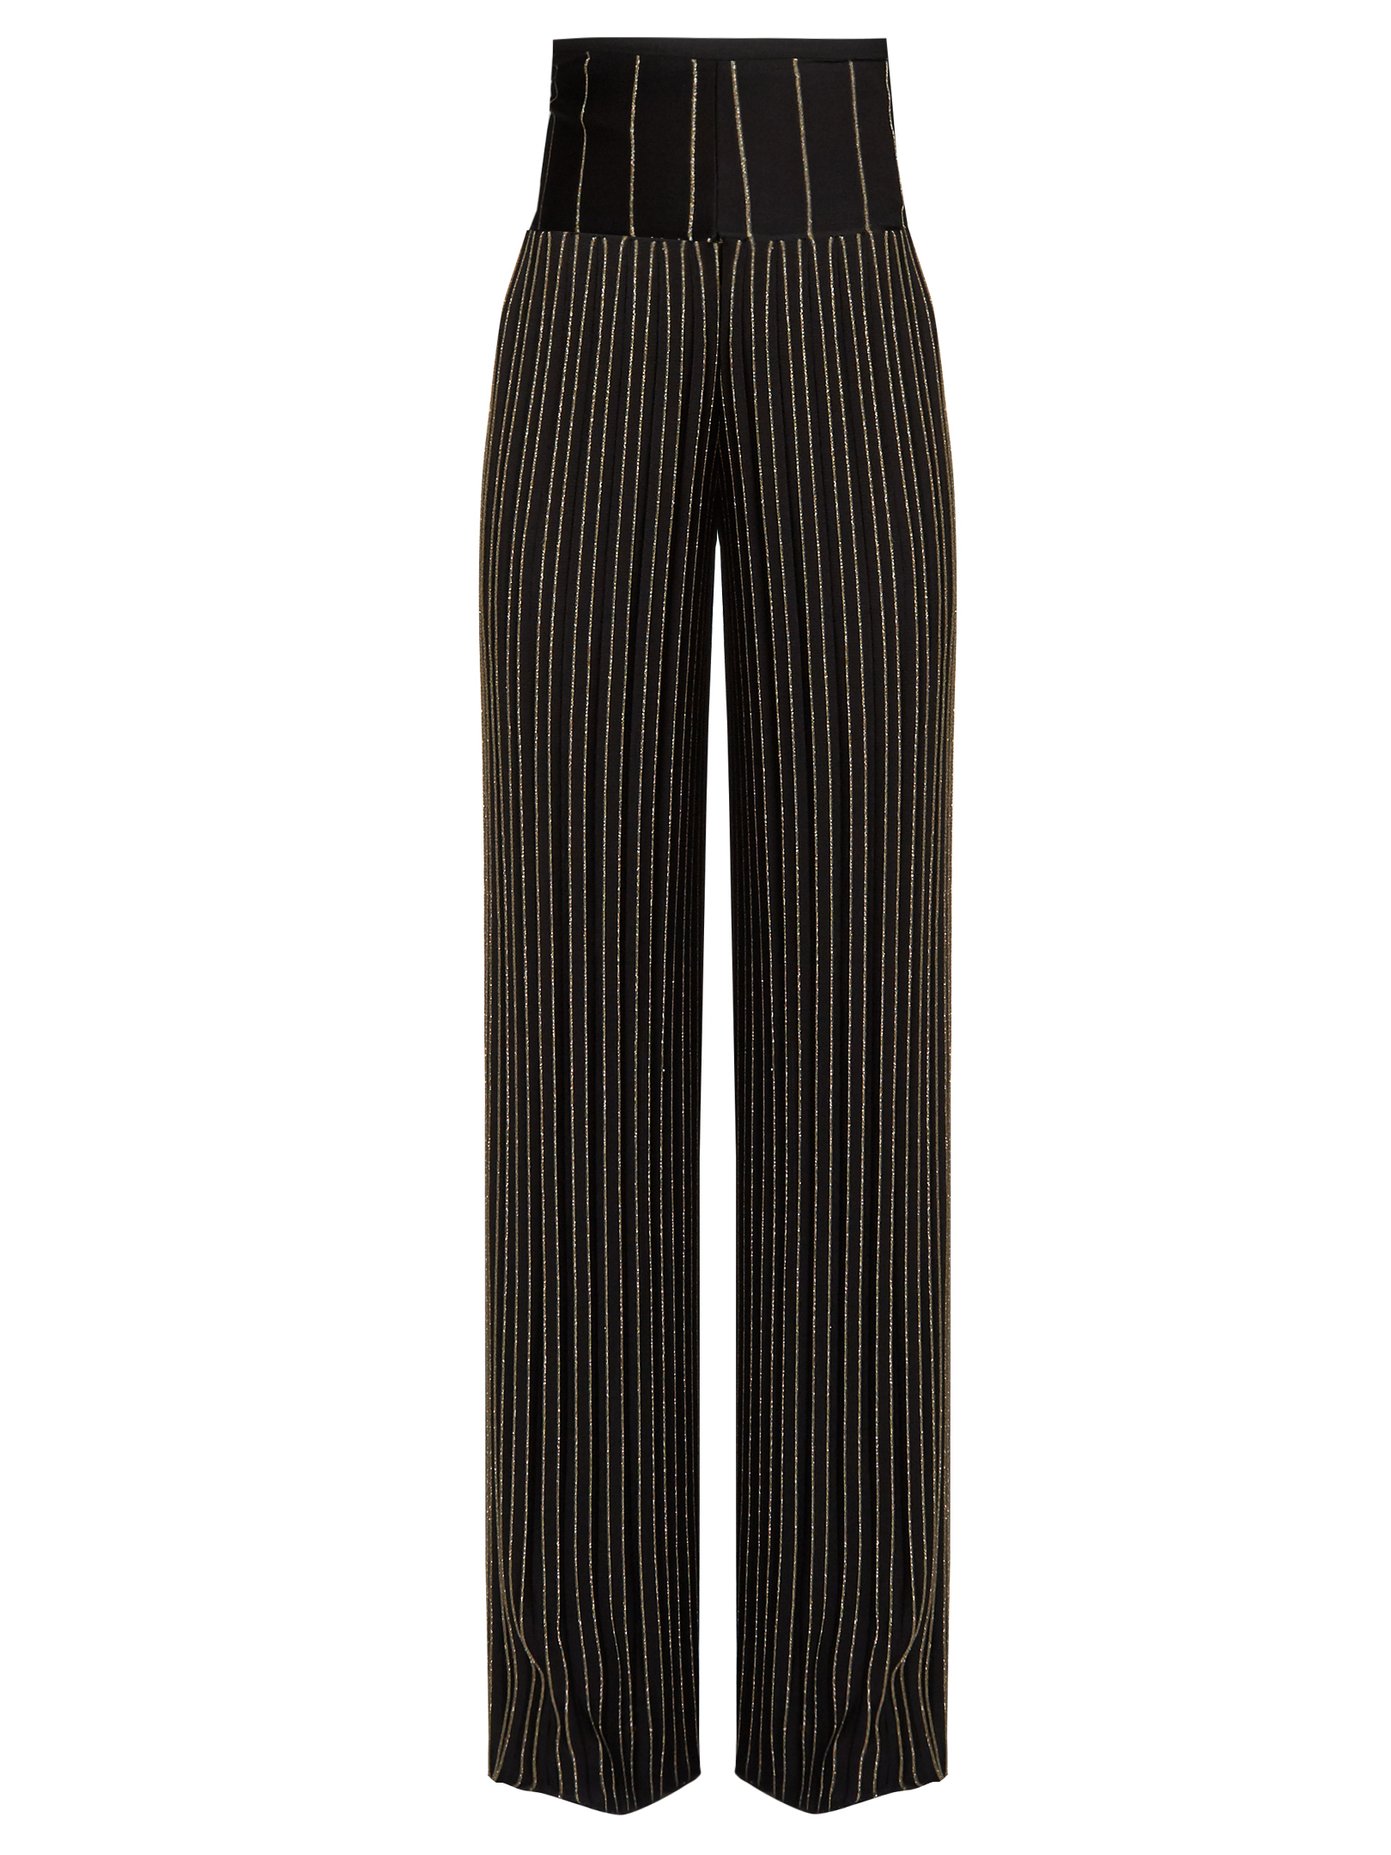 balmain striped pants